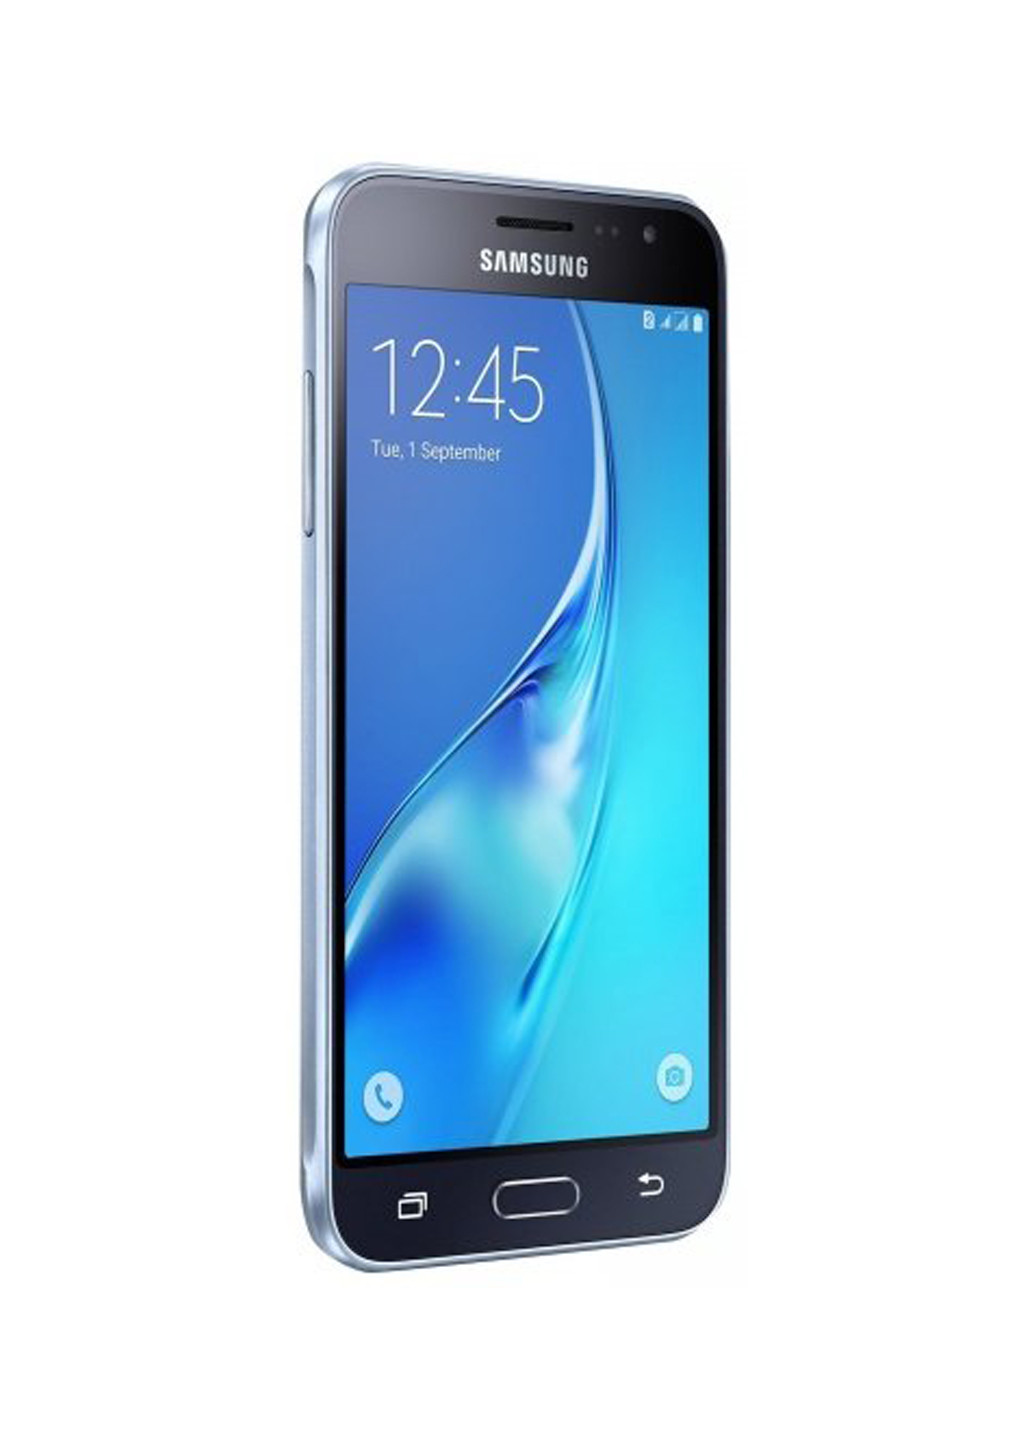 Смартфон Galaxy J3 (2016) 1.5 / 8GB Black (SM-J320HZKDSEK) Samsung galaxy j3 (2016) 1.5/8gb black (sm-j320hzkdsek) (131468522)